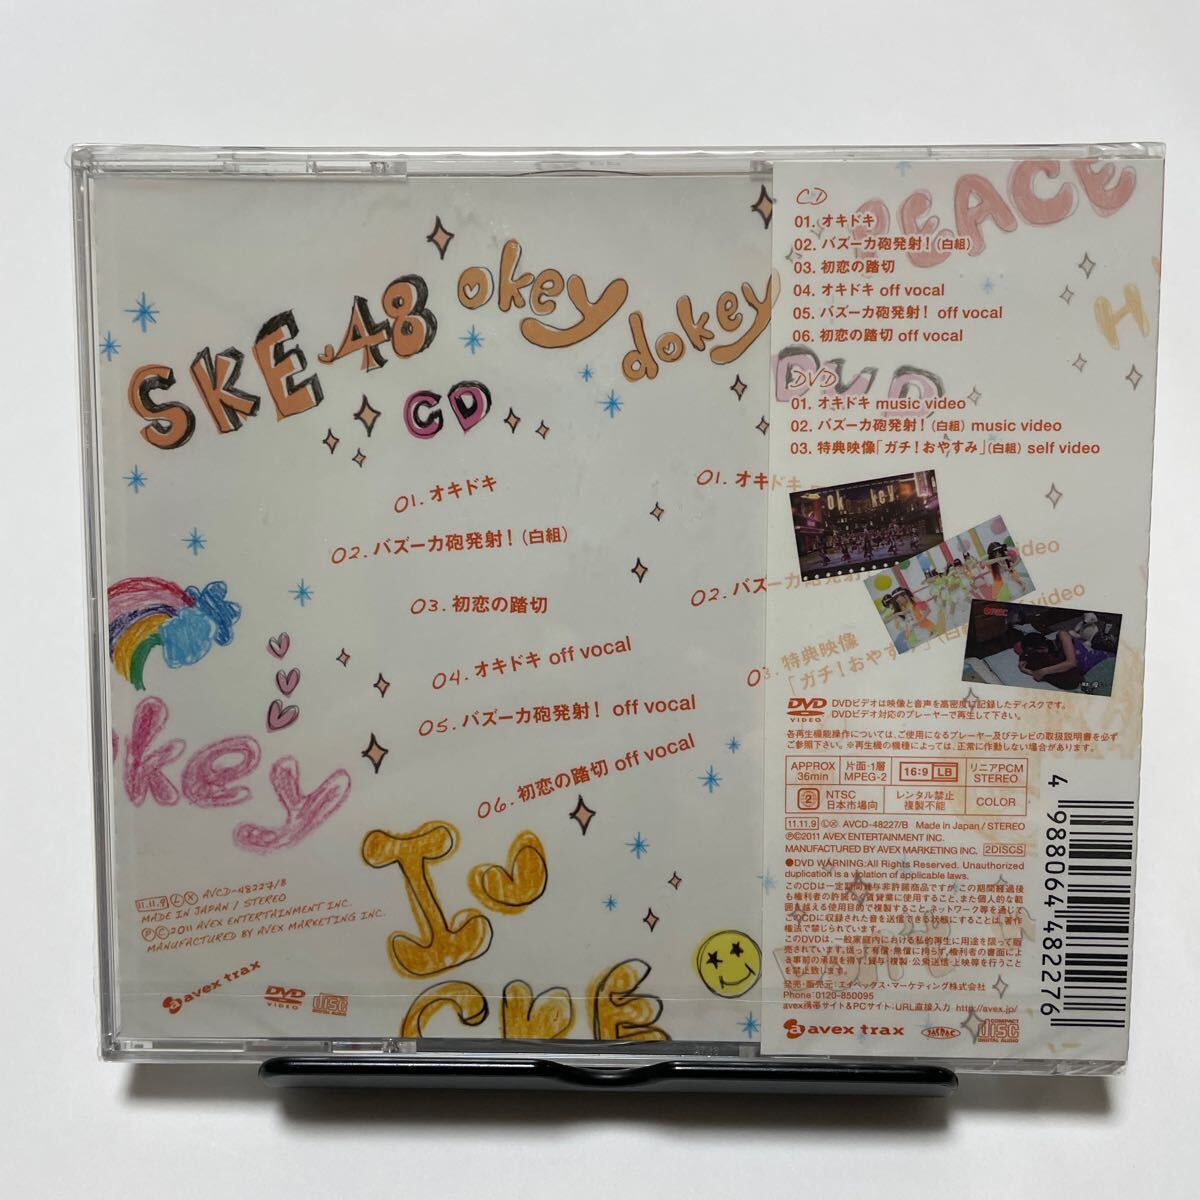 【新品未開封】SKE48 CD+DVD [オキドキ] 11/11/9発売 オリコン加盟店 ジャケットA_画像2